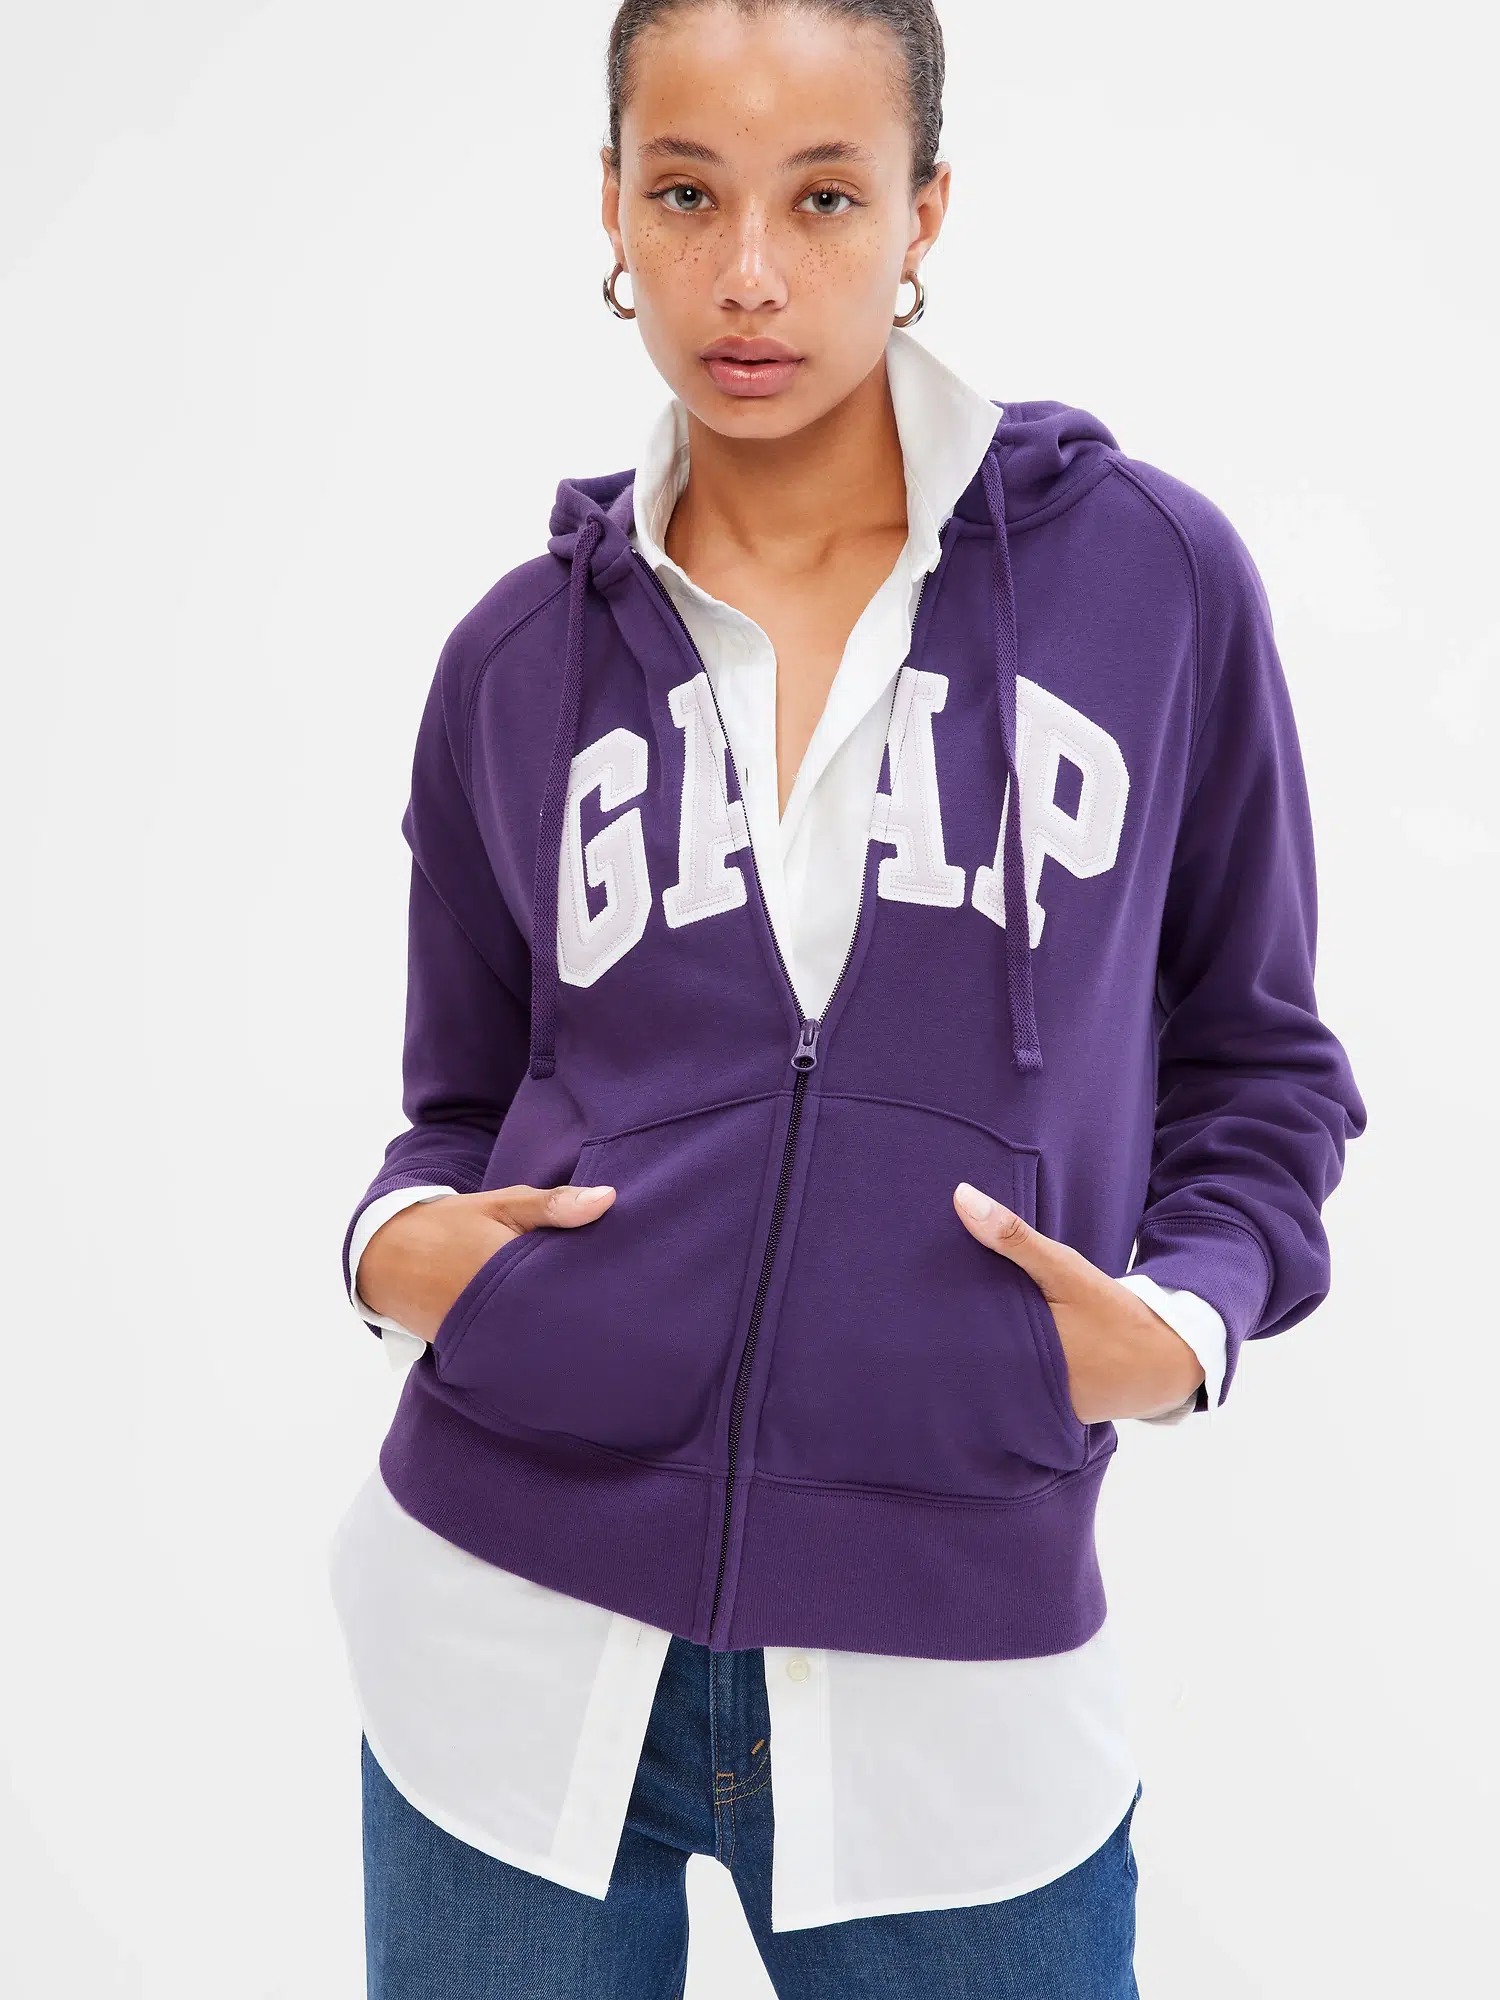 5. Gap Logo Zip Hoodie